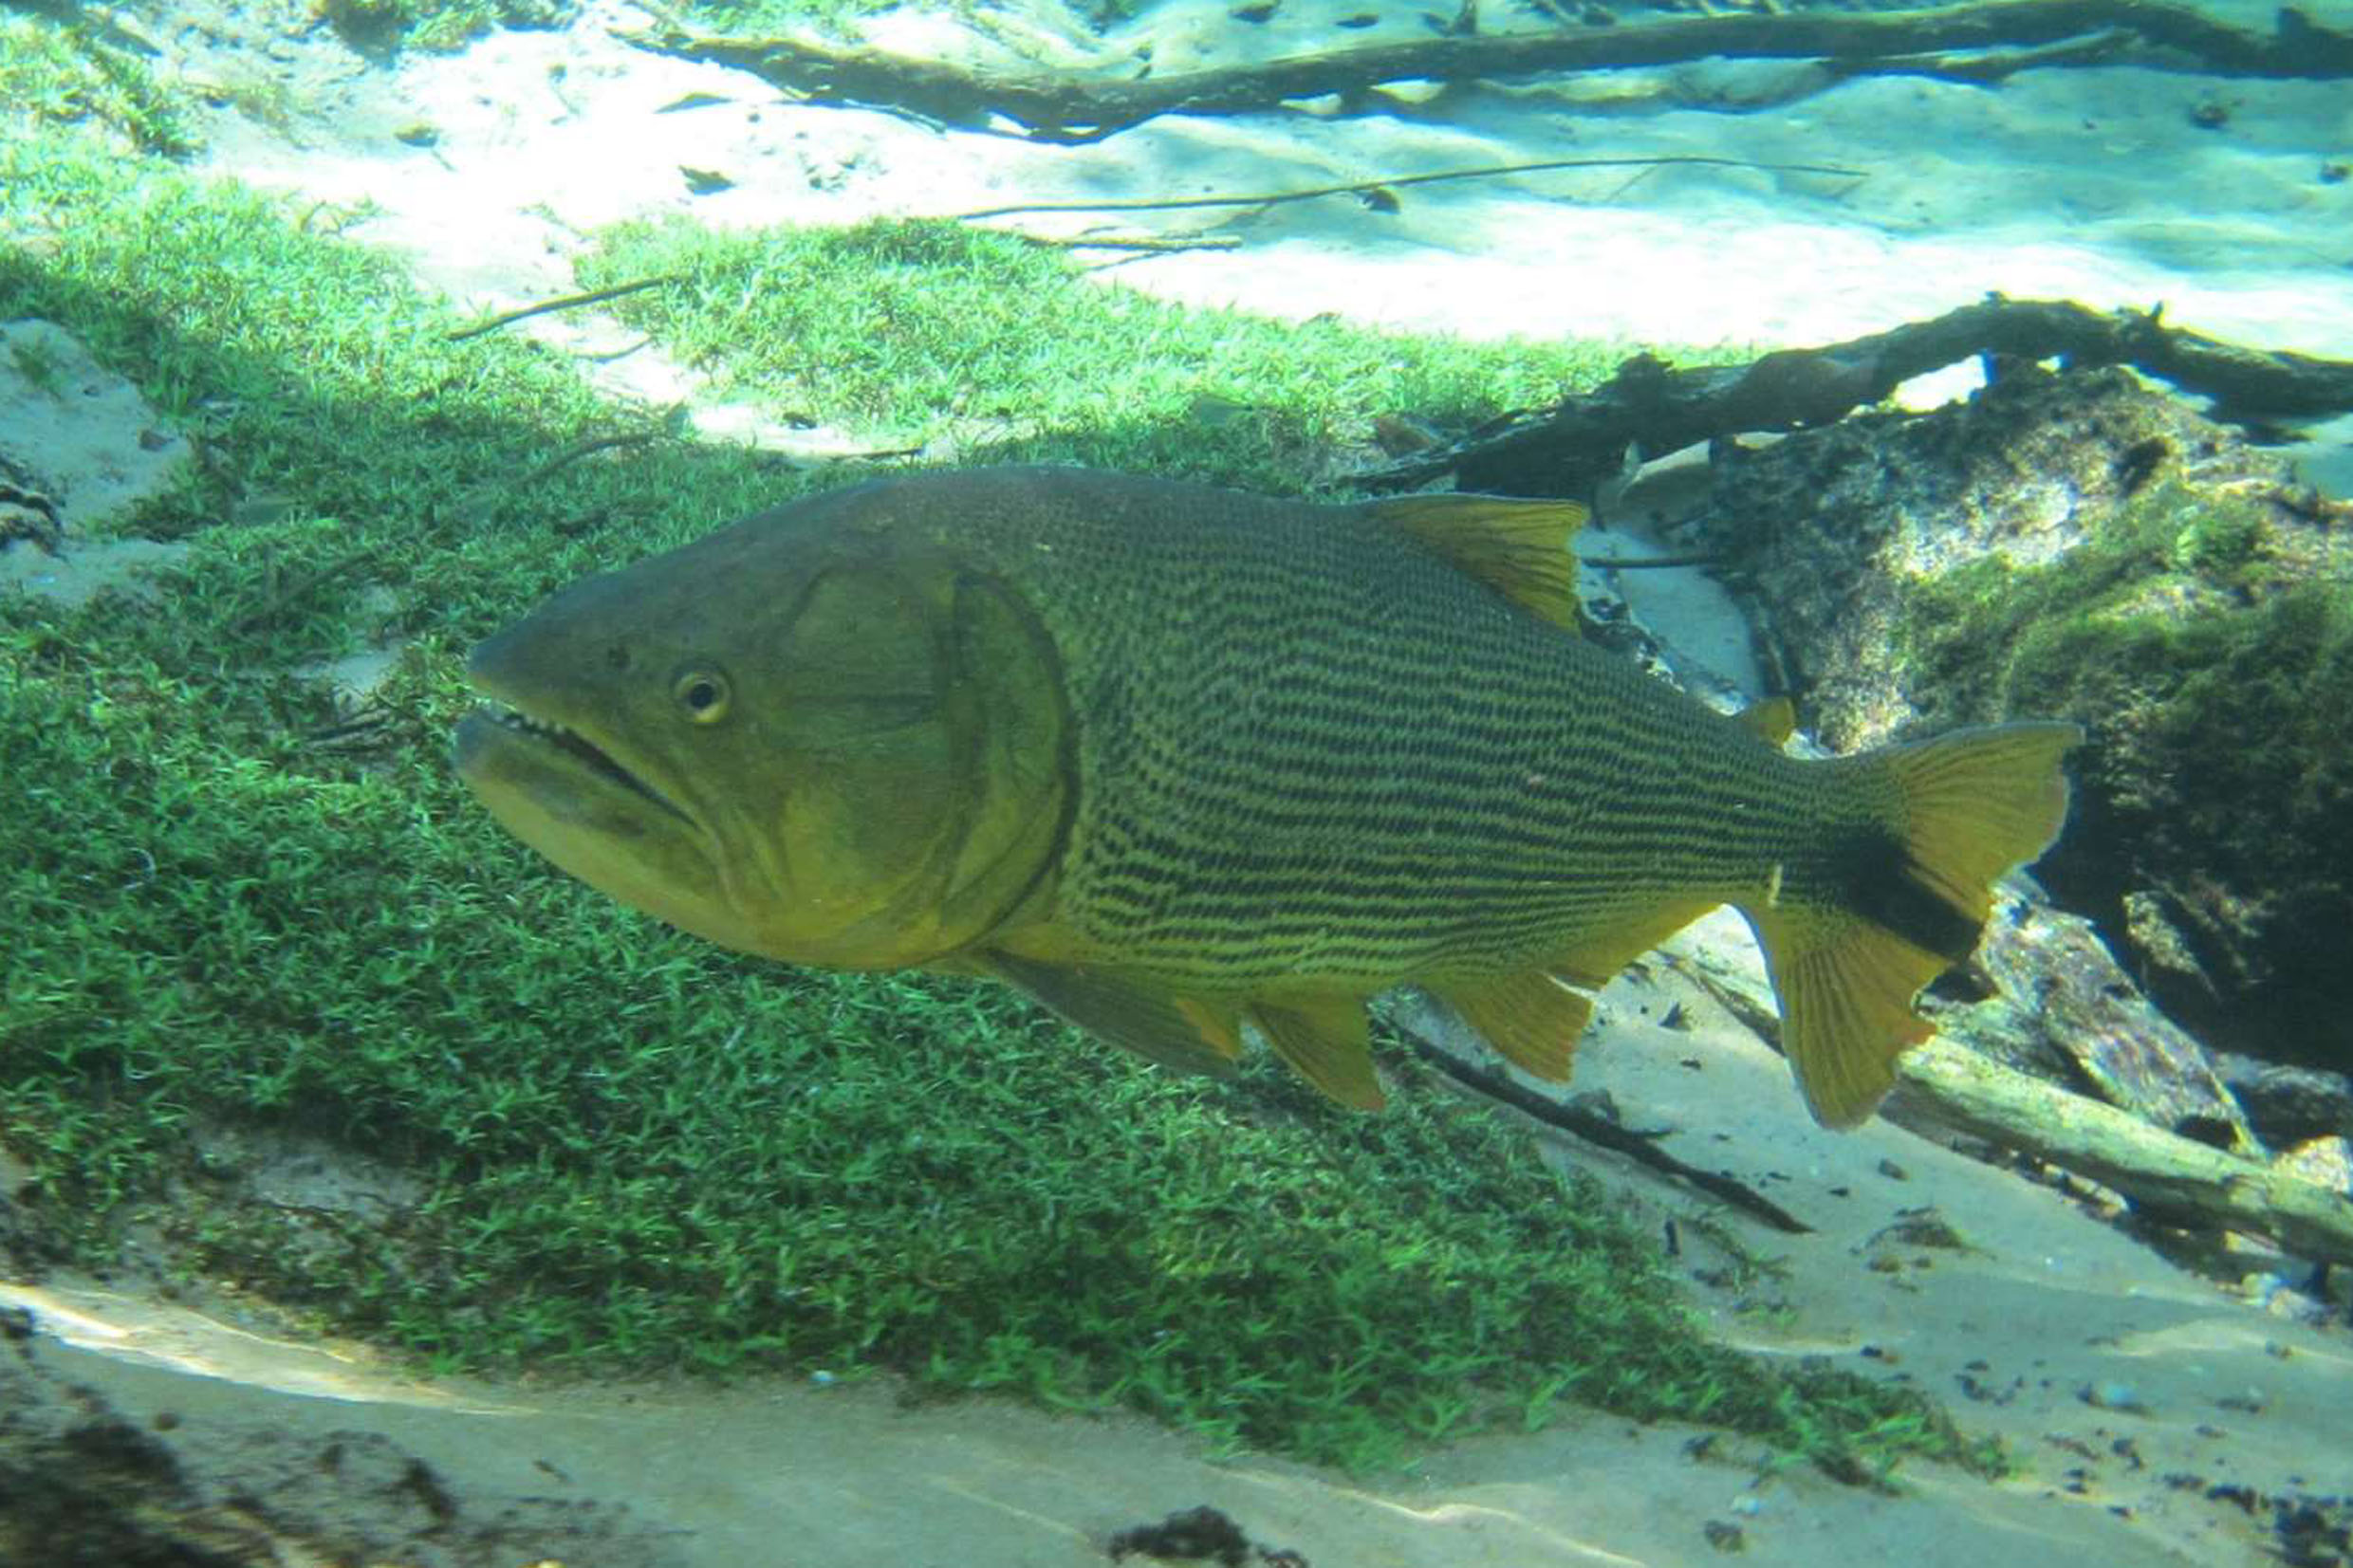 Imagem ilustrativa do peixe Dourado<a style='float:right;color:#ccc' href='https://www3.al.sp.gov.br/repositorio/noticia/N-12-2017/fg215575.jpg' target=_blank><i class='bi bi-zoom-in'></i> Clique para ver a imagem </a>